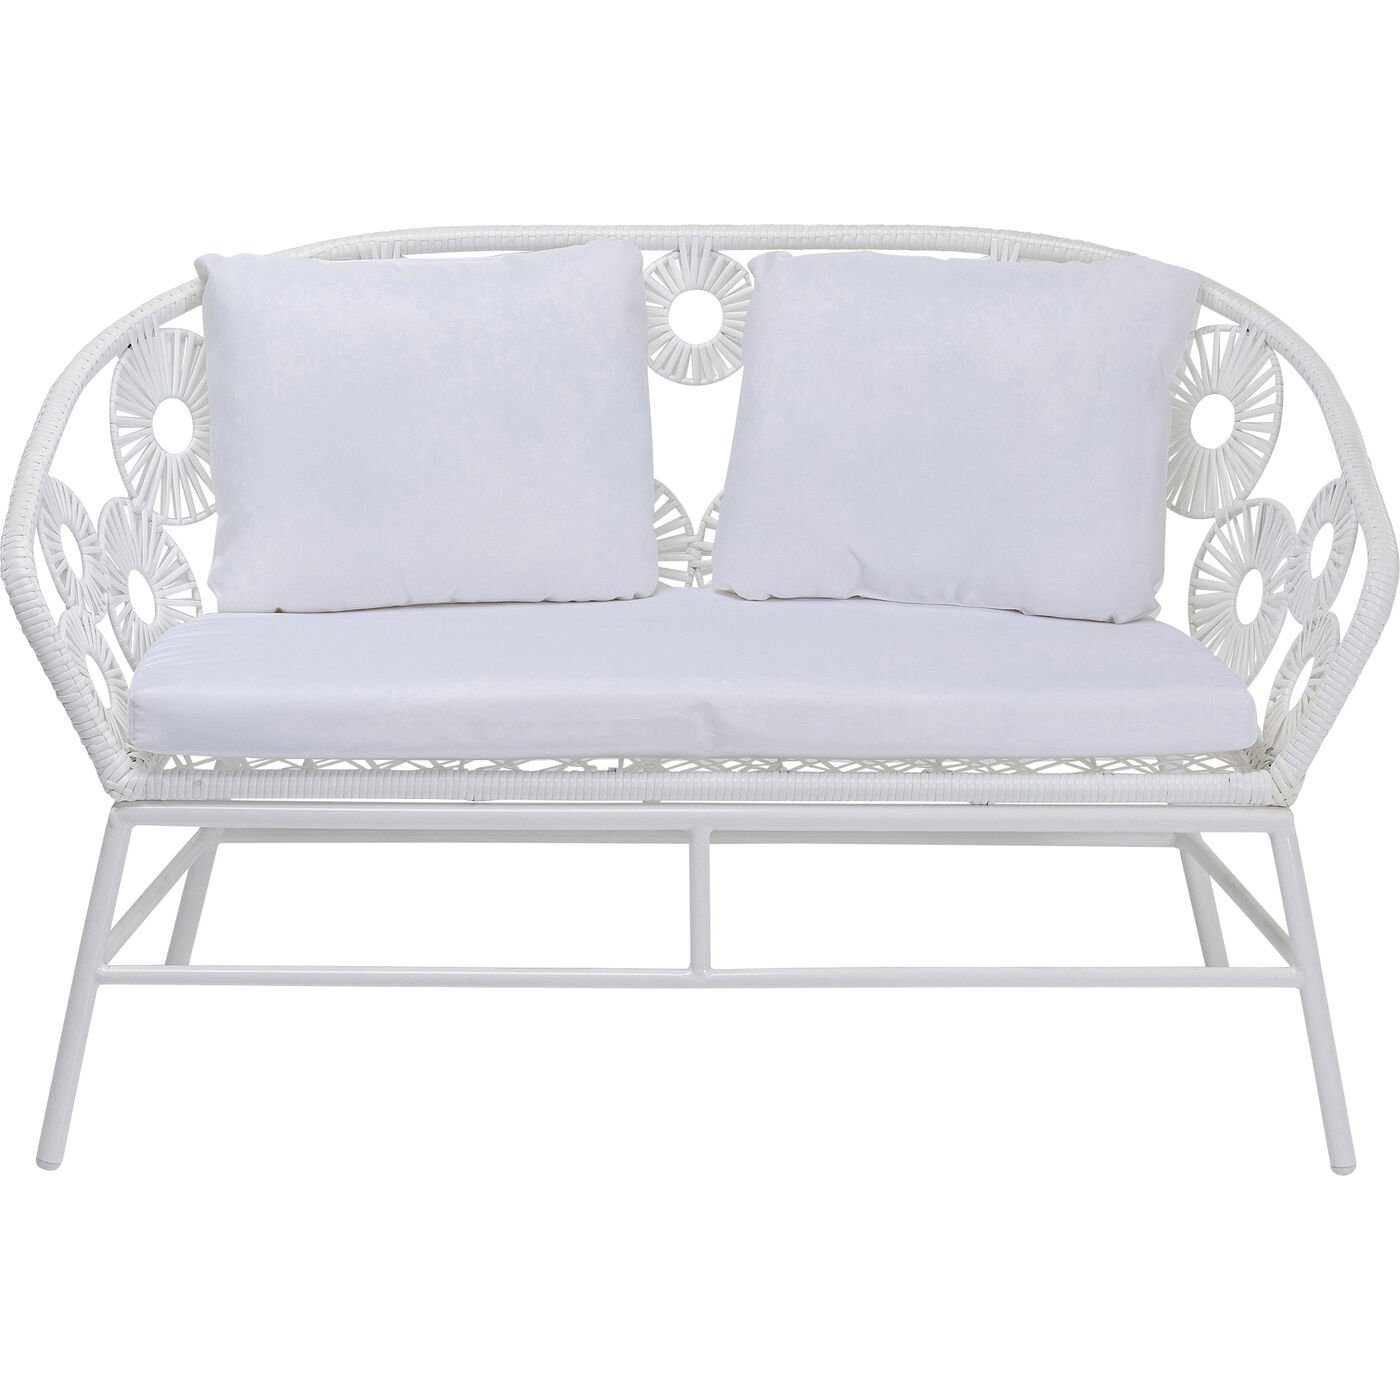 KARE Gartenliege Sofa Ibiza Weiss, Farbe: Weiß online kaufen | OTTO